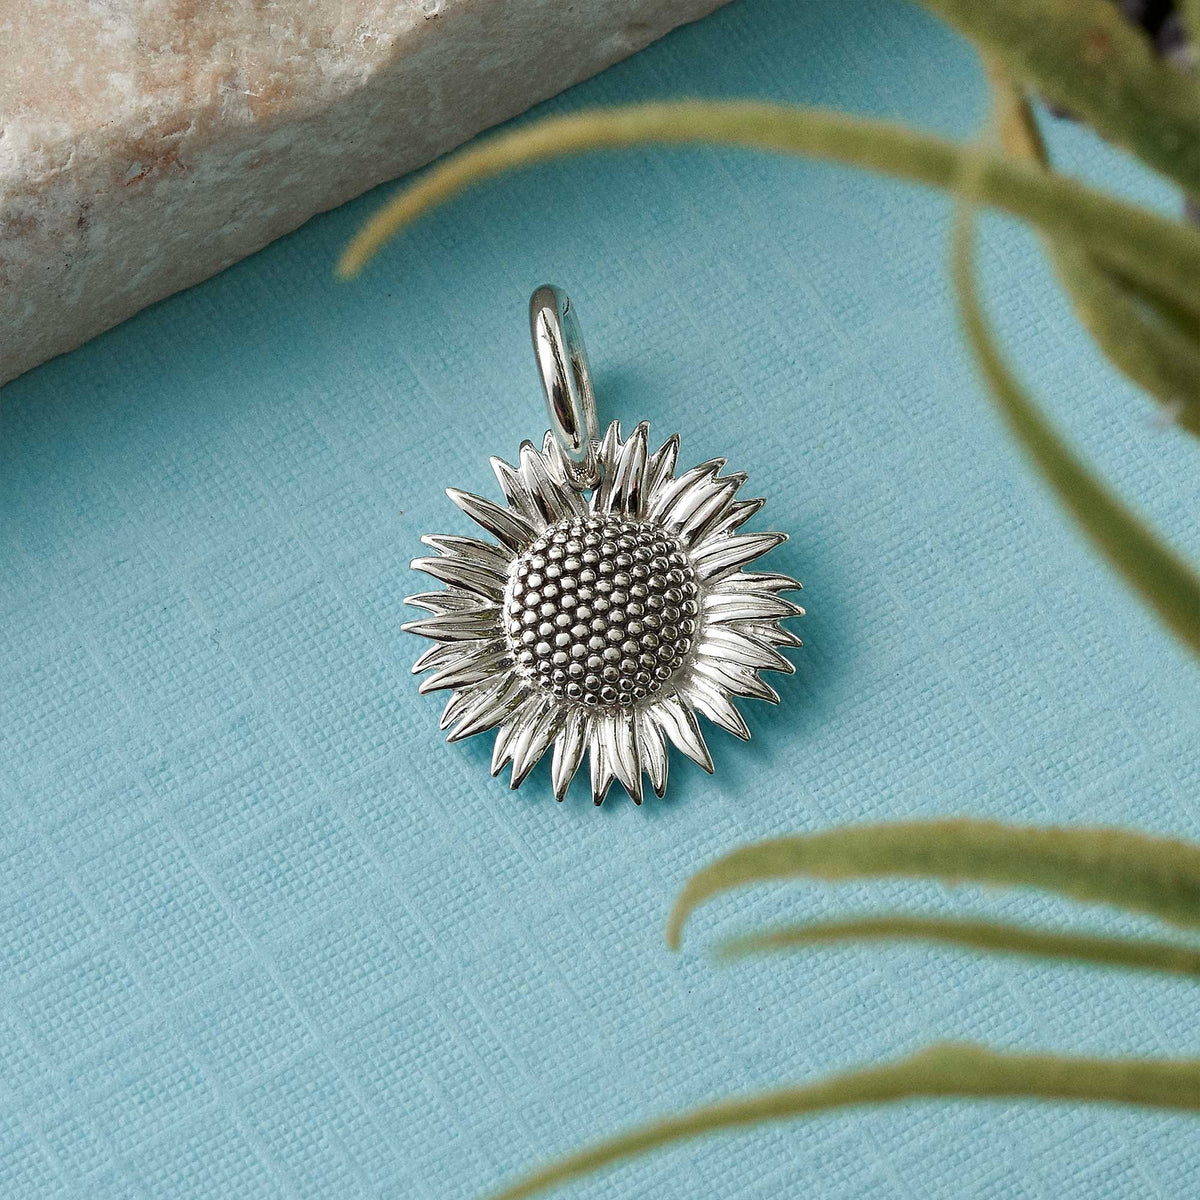 Sunflower Silver Charm Scarlett Jewellery